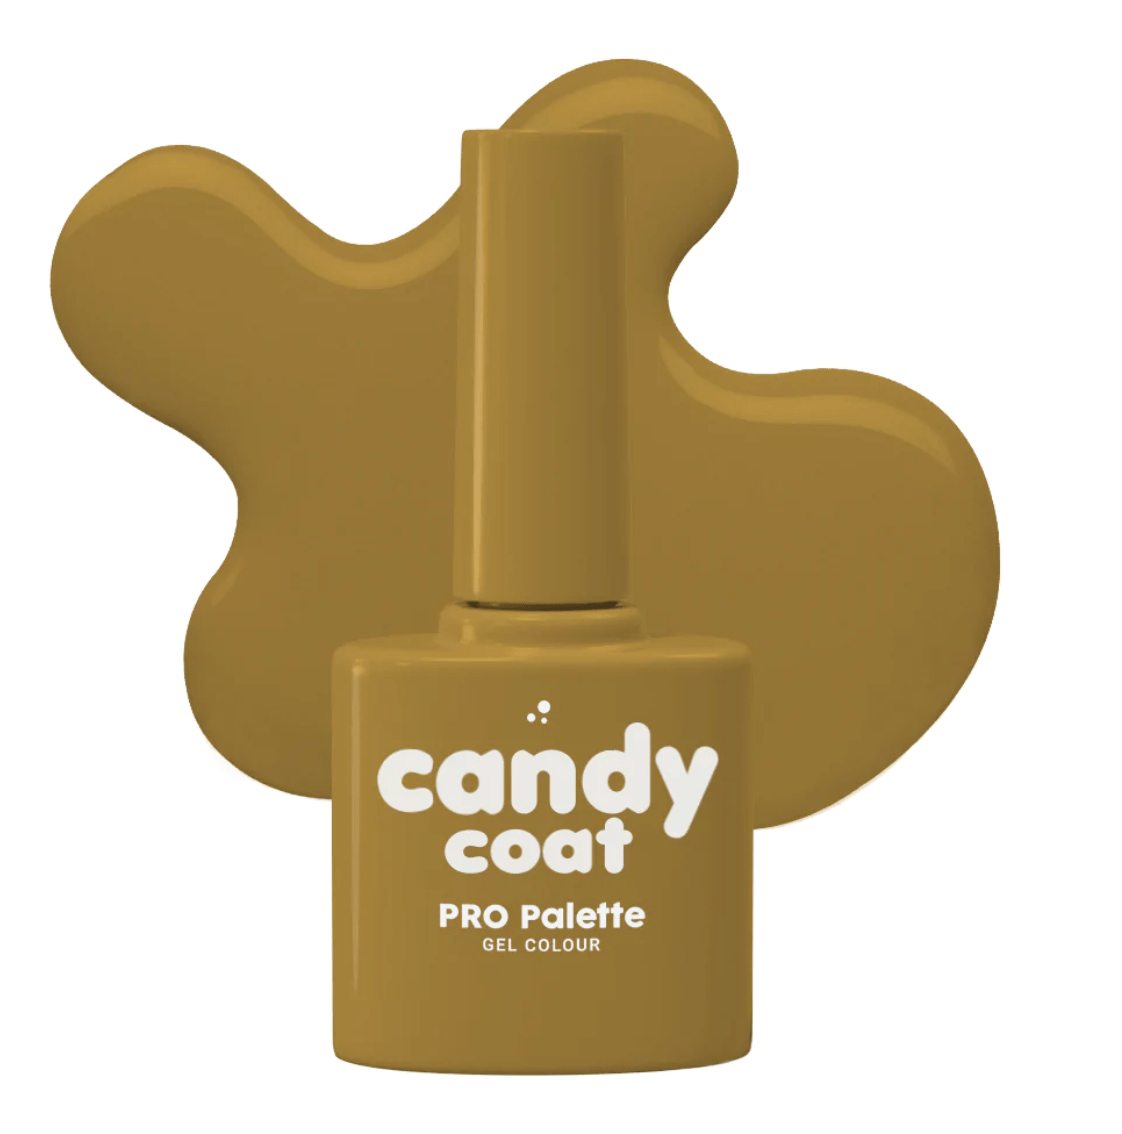 Candy Coat PRO Palette 822 Aubrey